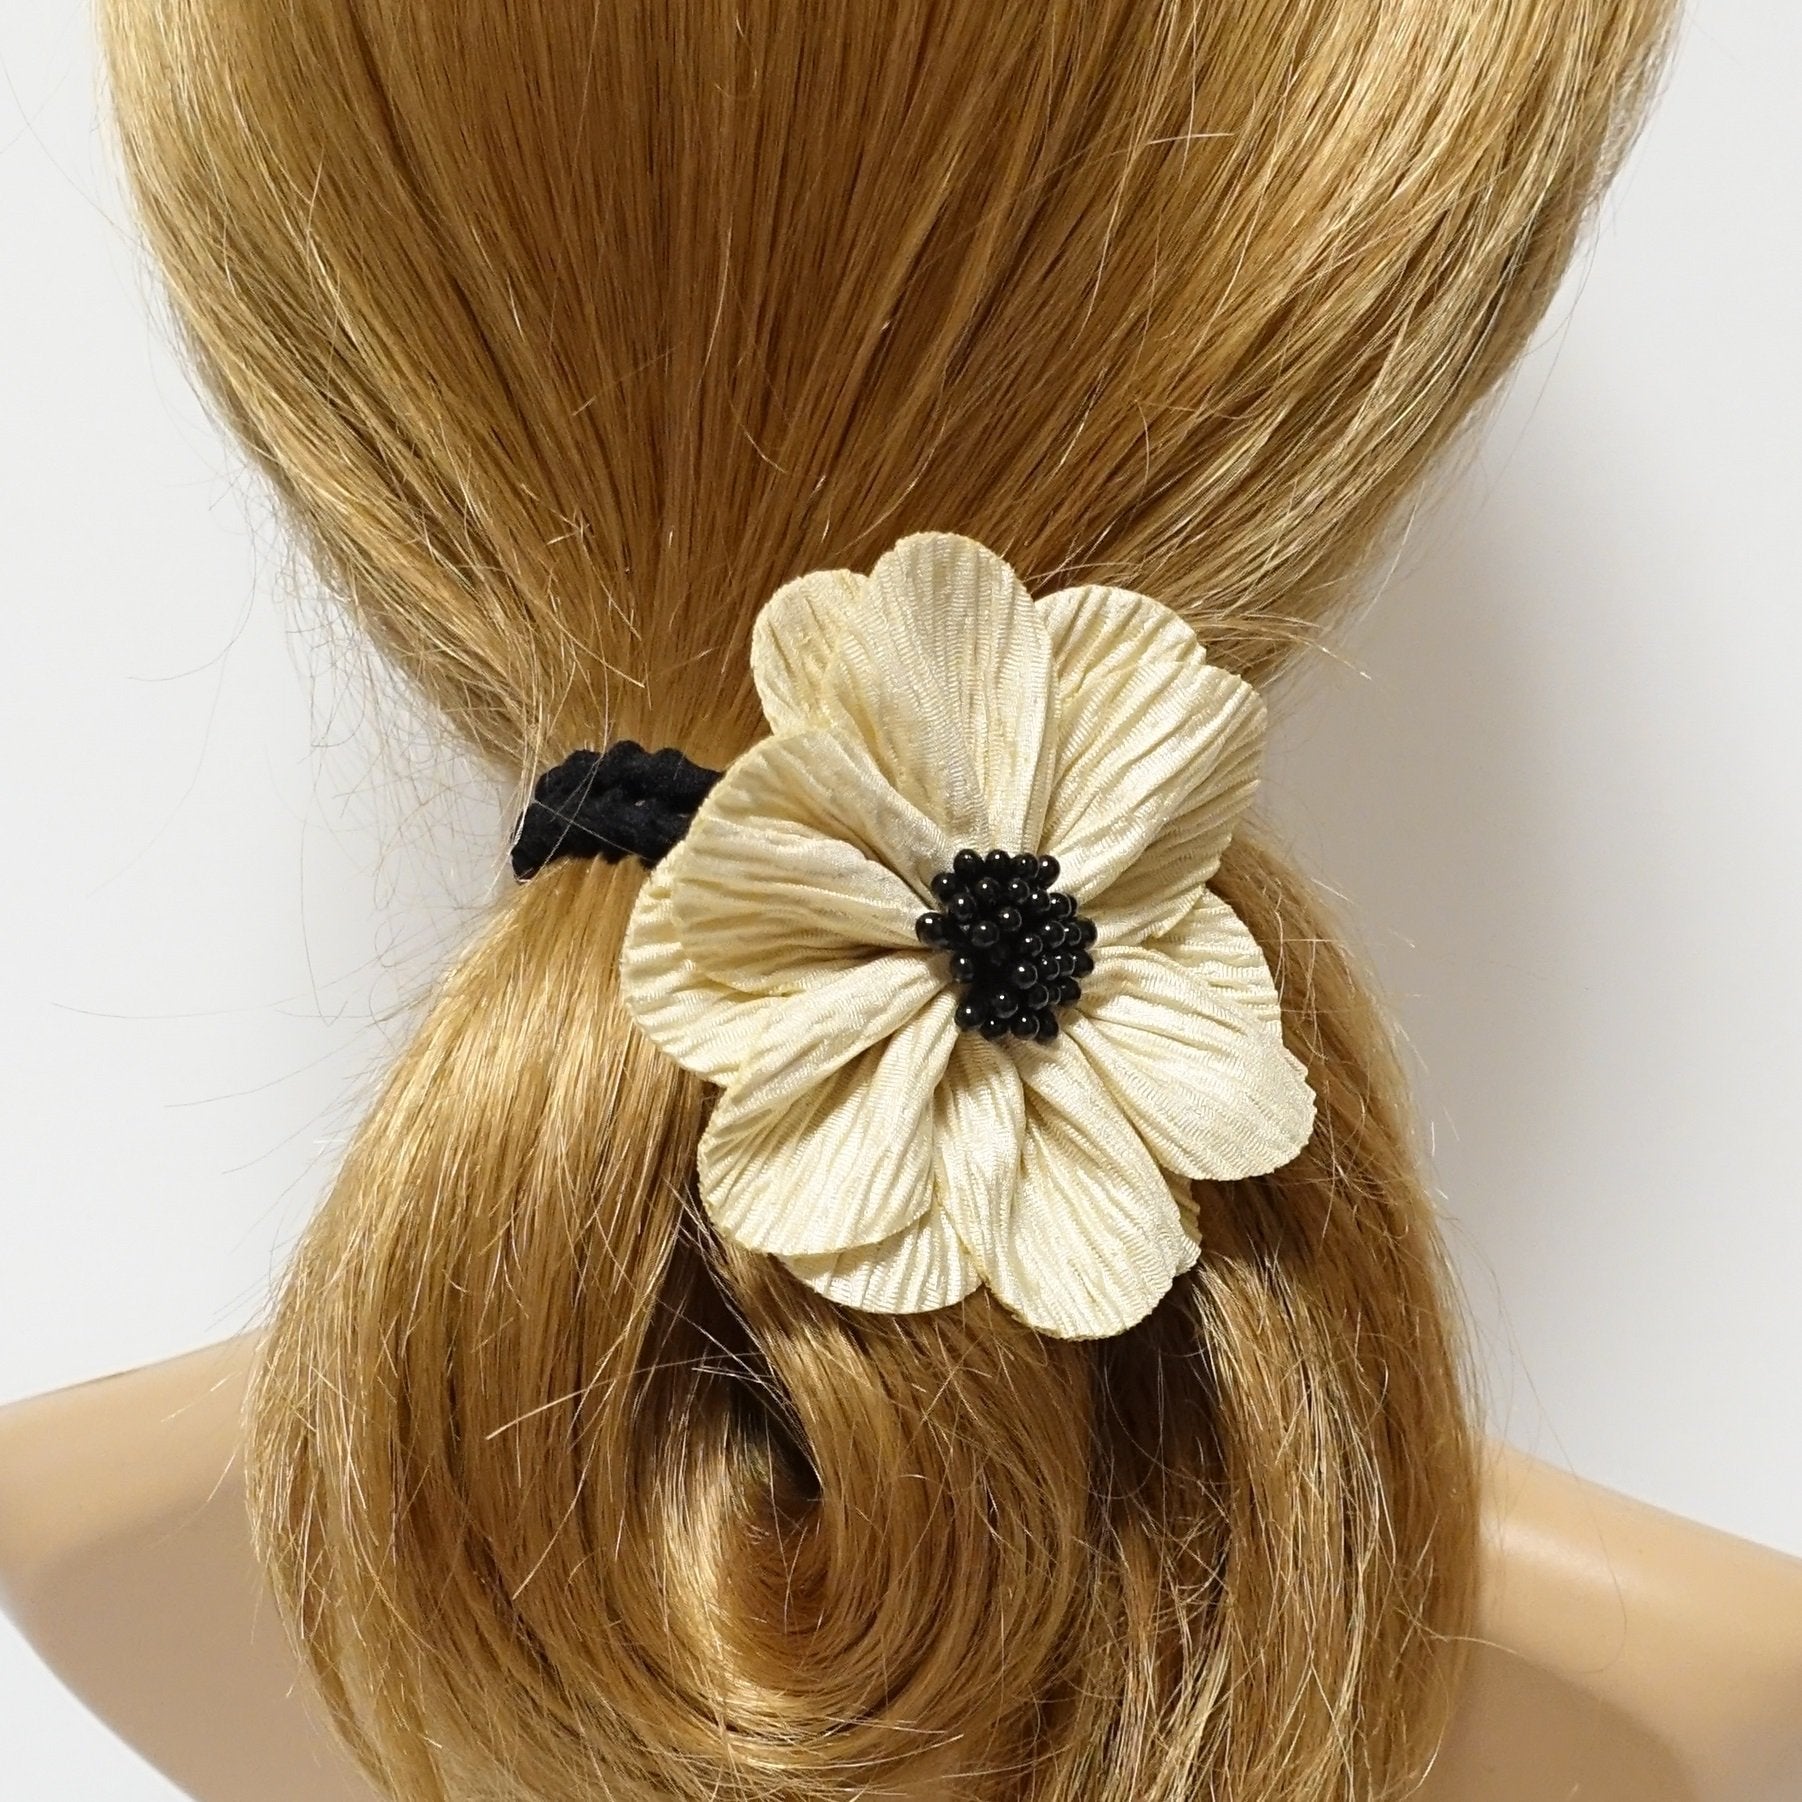 flower ponytail holder